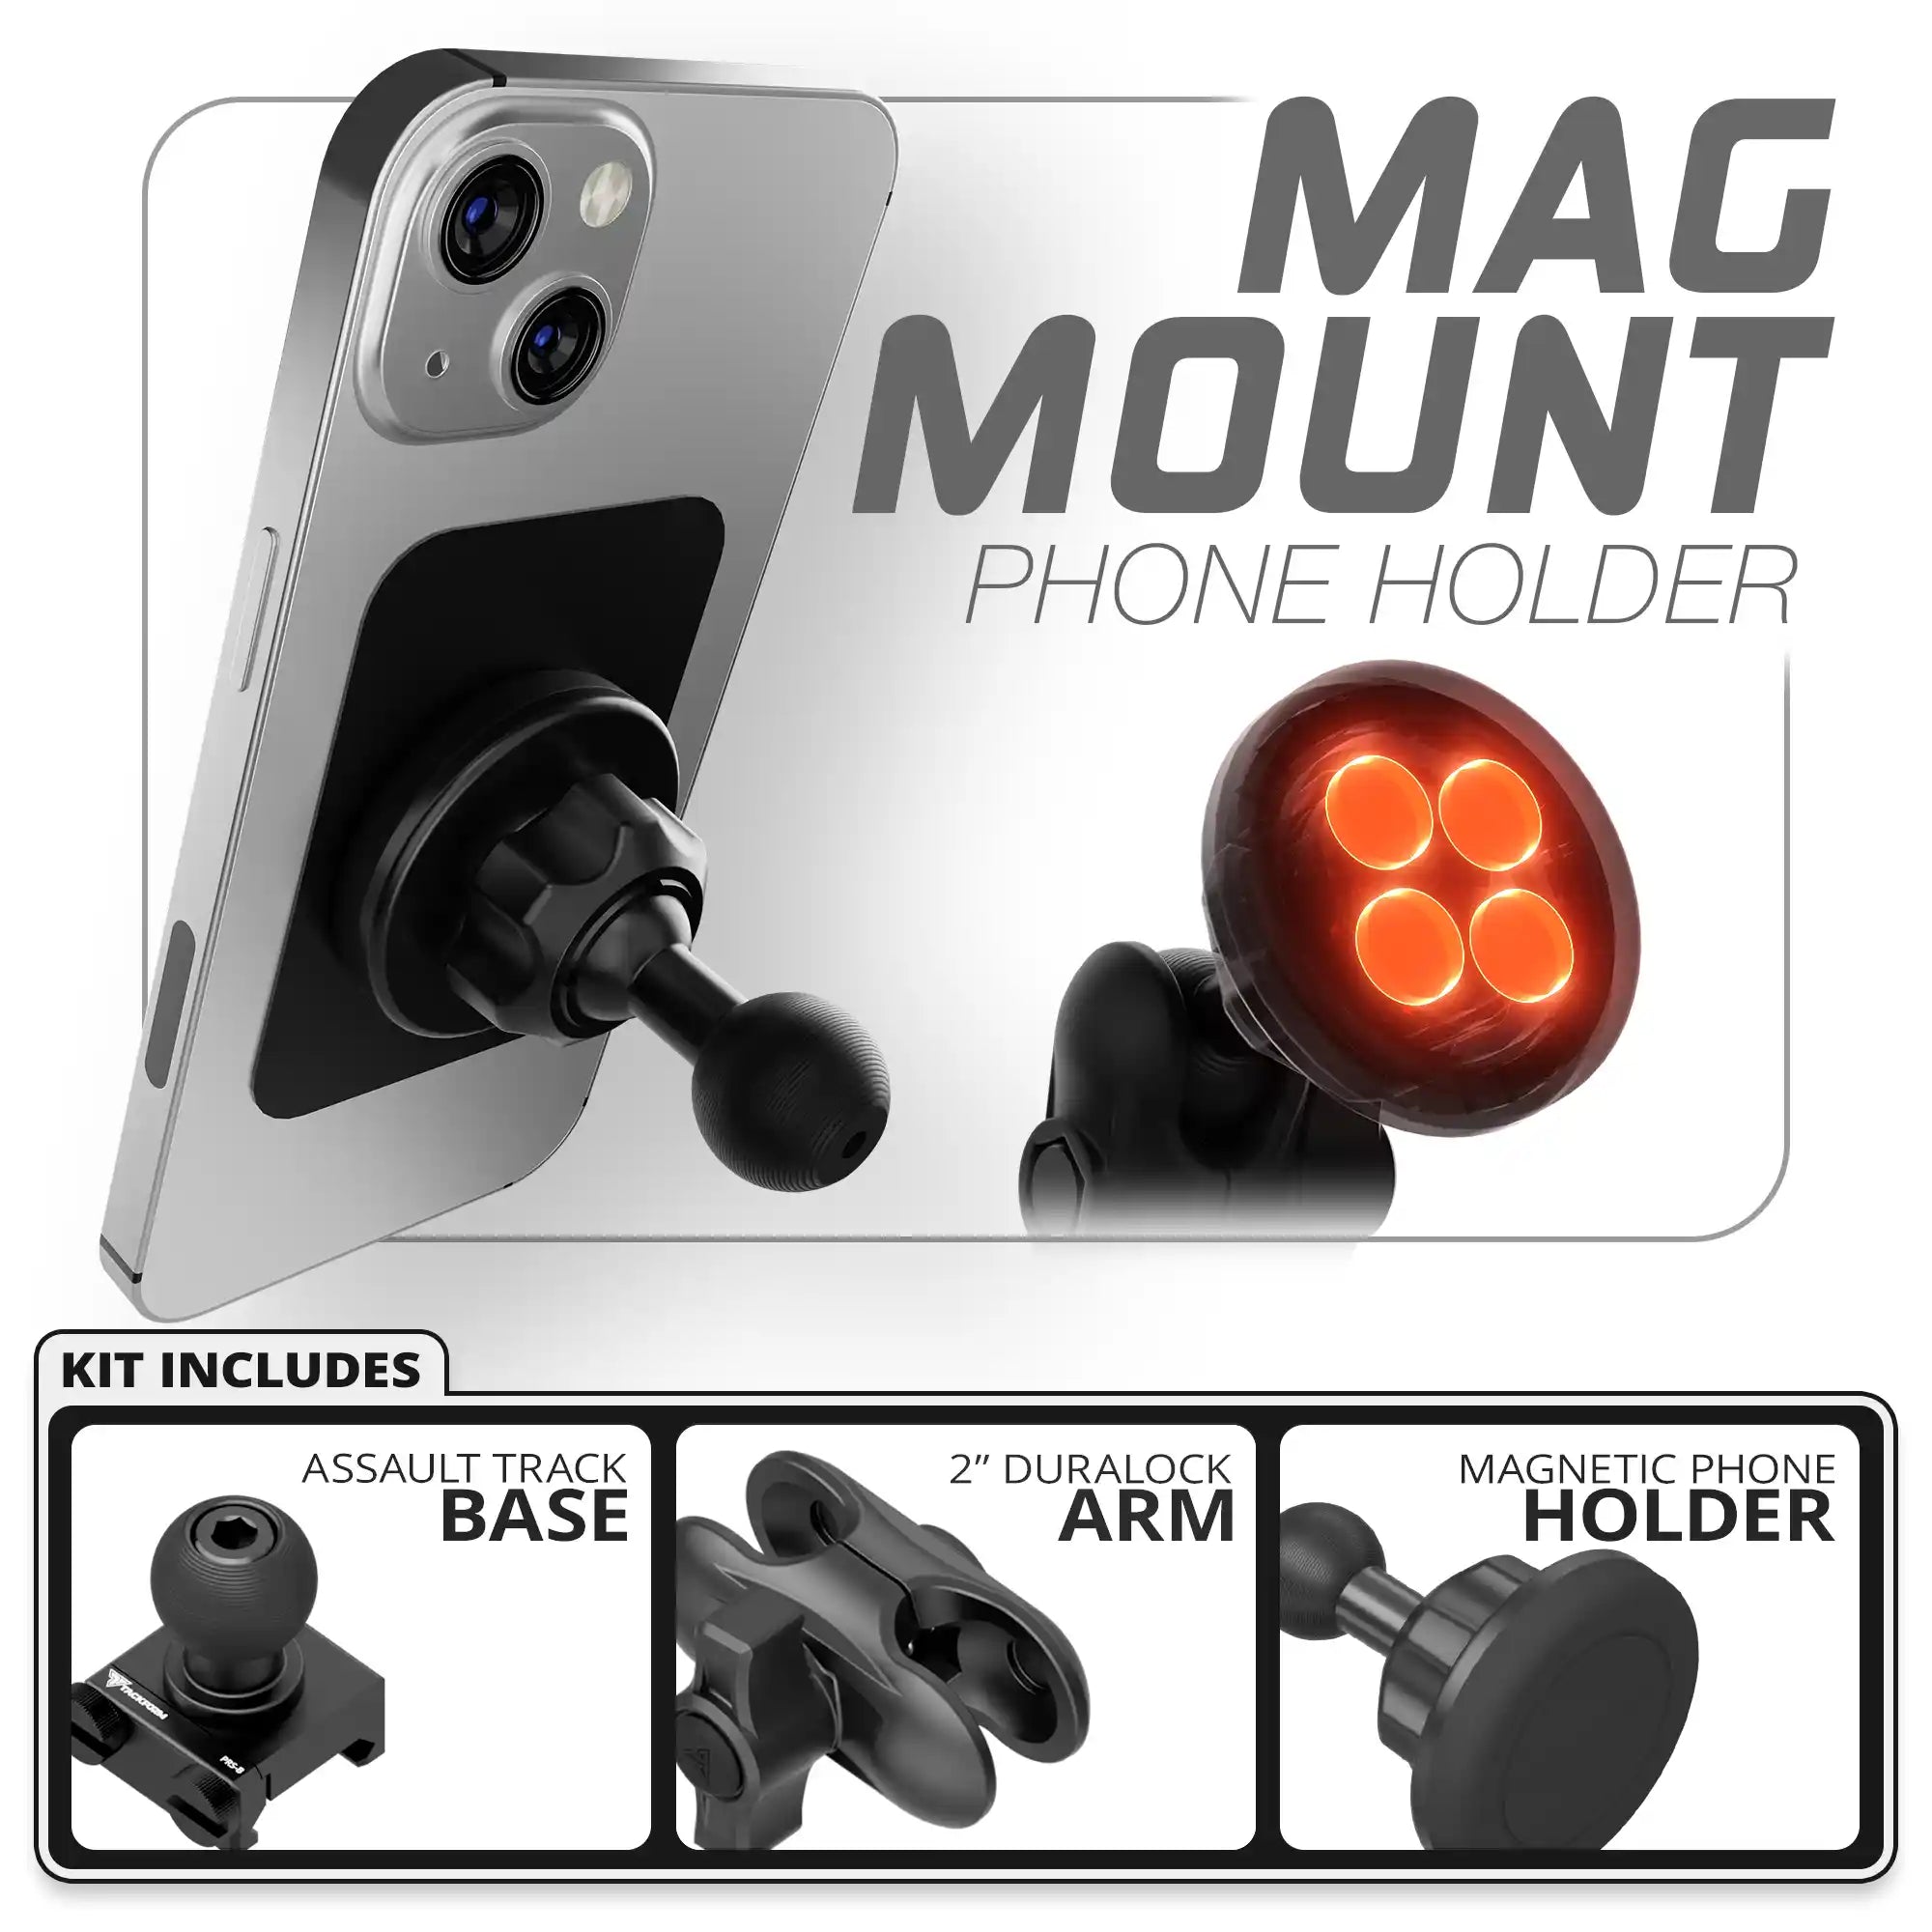 Magnetic Phone Holder | Assault Track Base | 2" DuraLock Arm